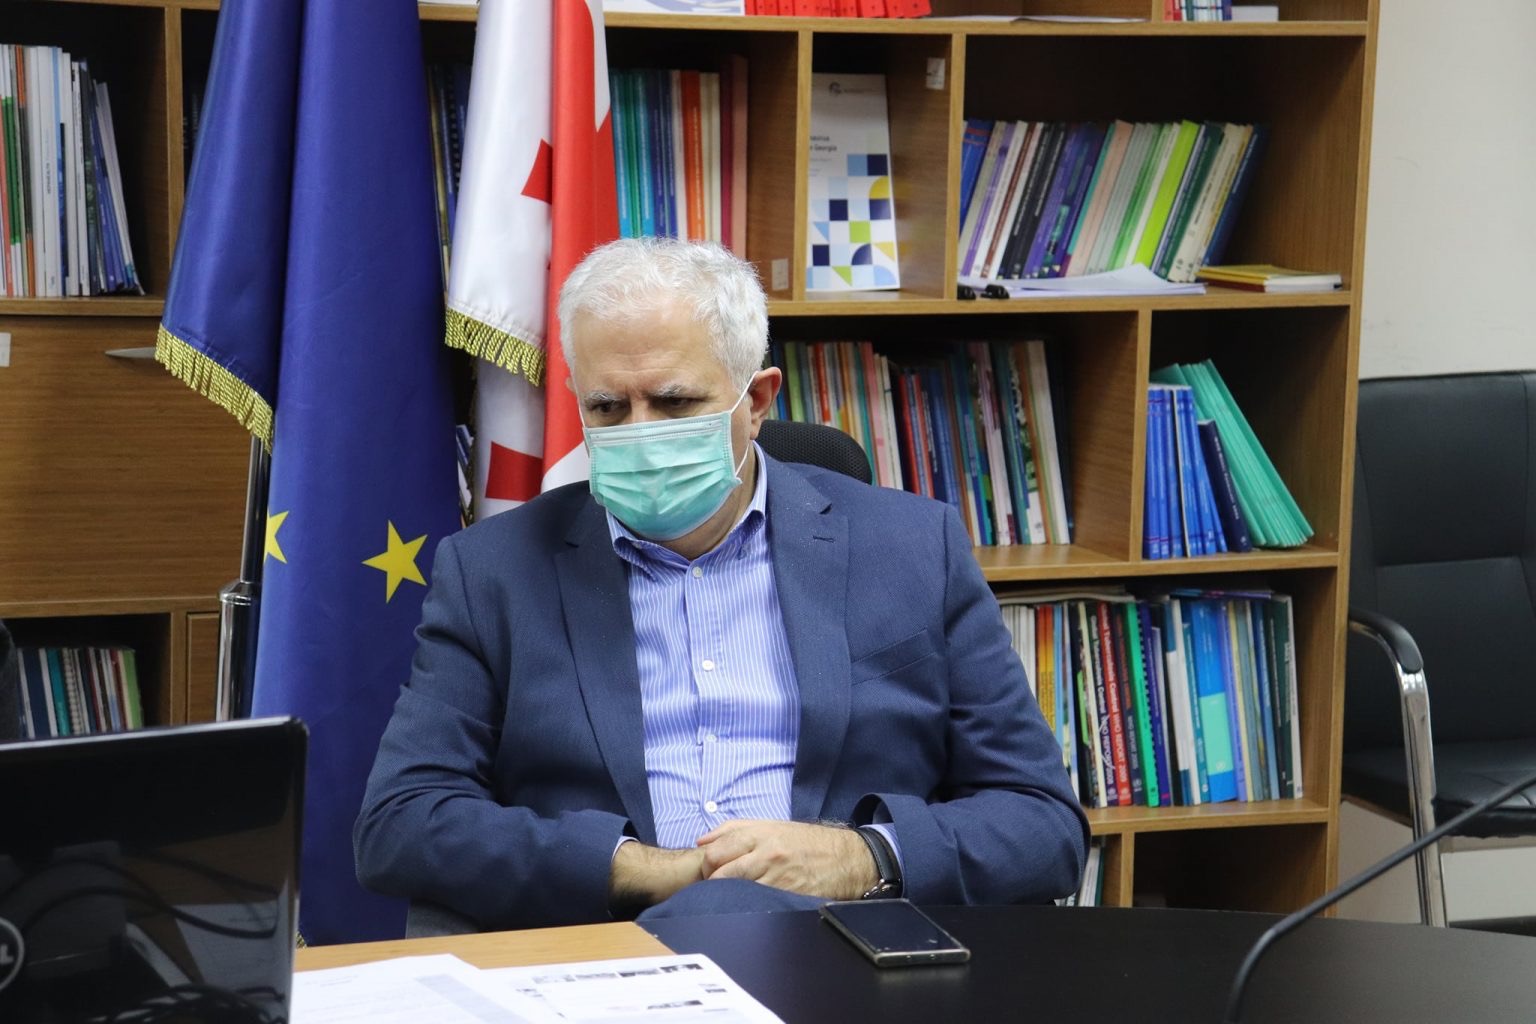 Снятие ограничений увеличит показатель заболеваемости Covid-19 в Грузии до 5 тыс. в сутки